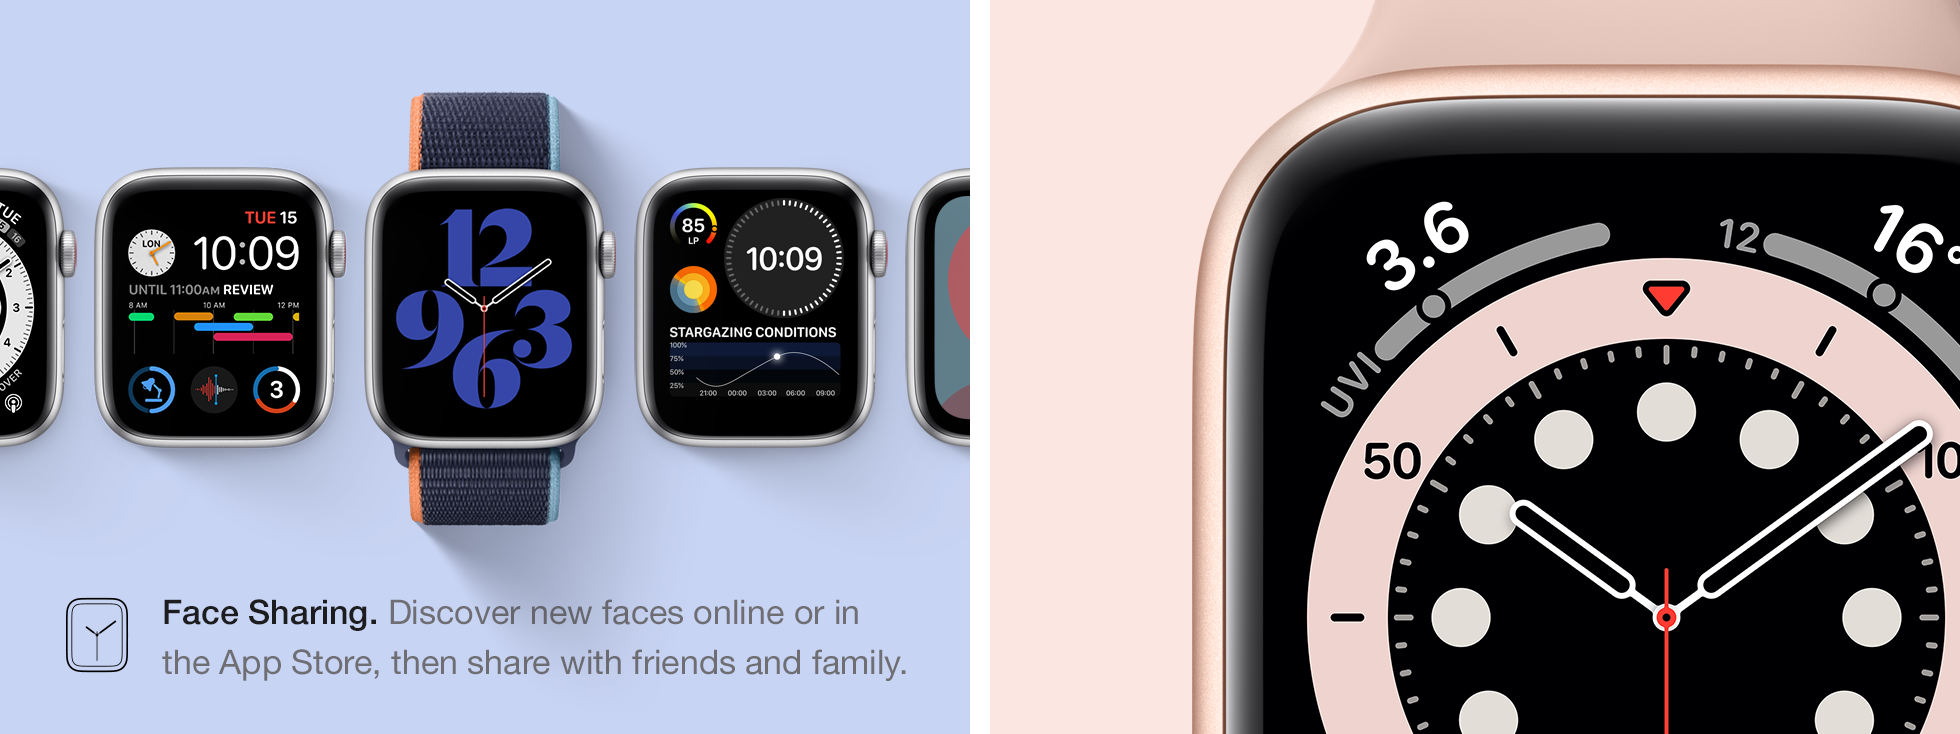 Customize your Apple Watch SE and enjoy a beautiful Retina display.